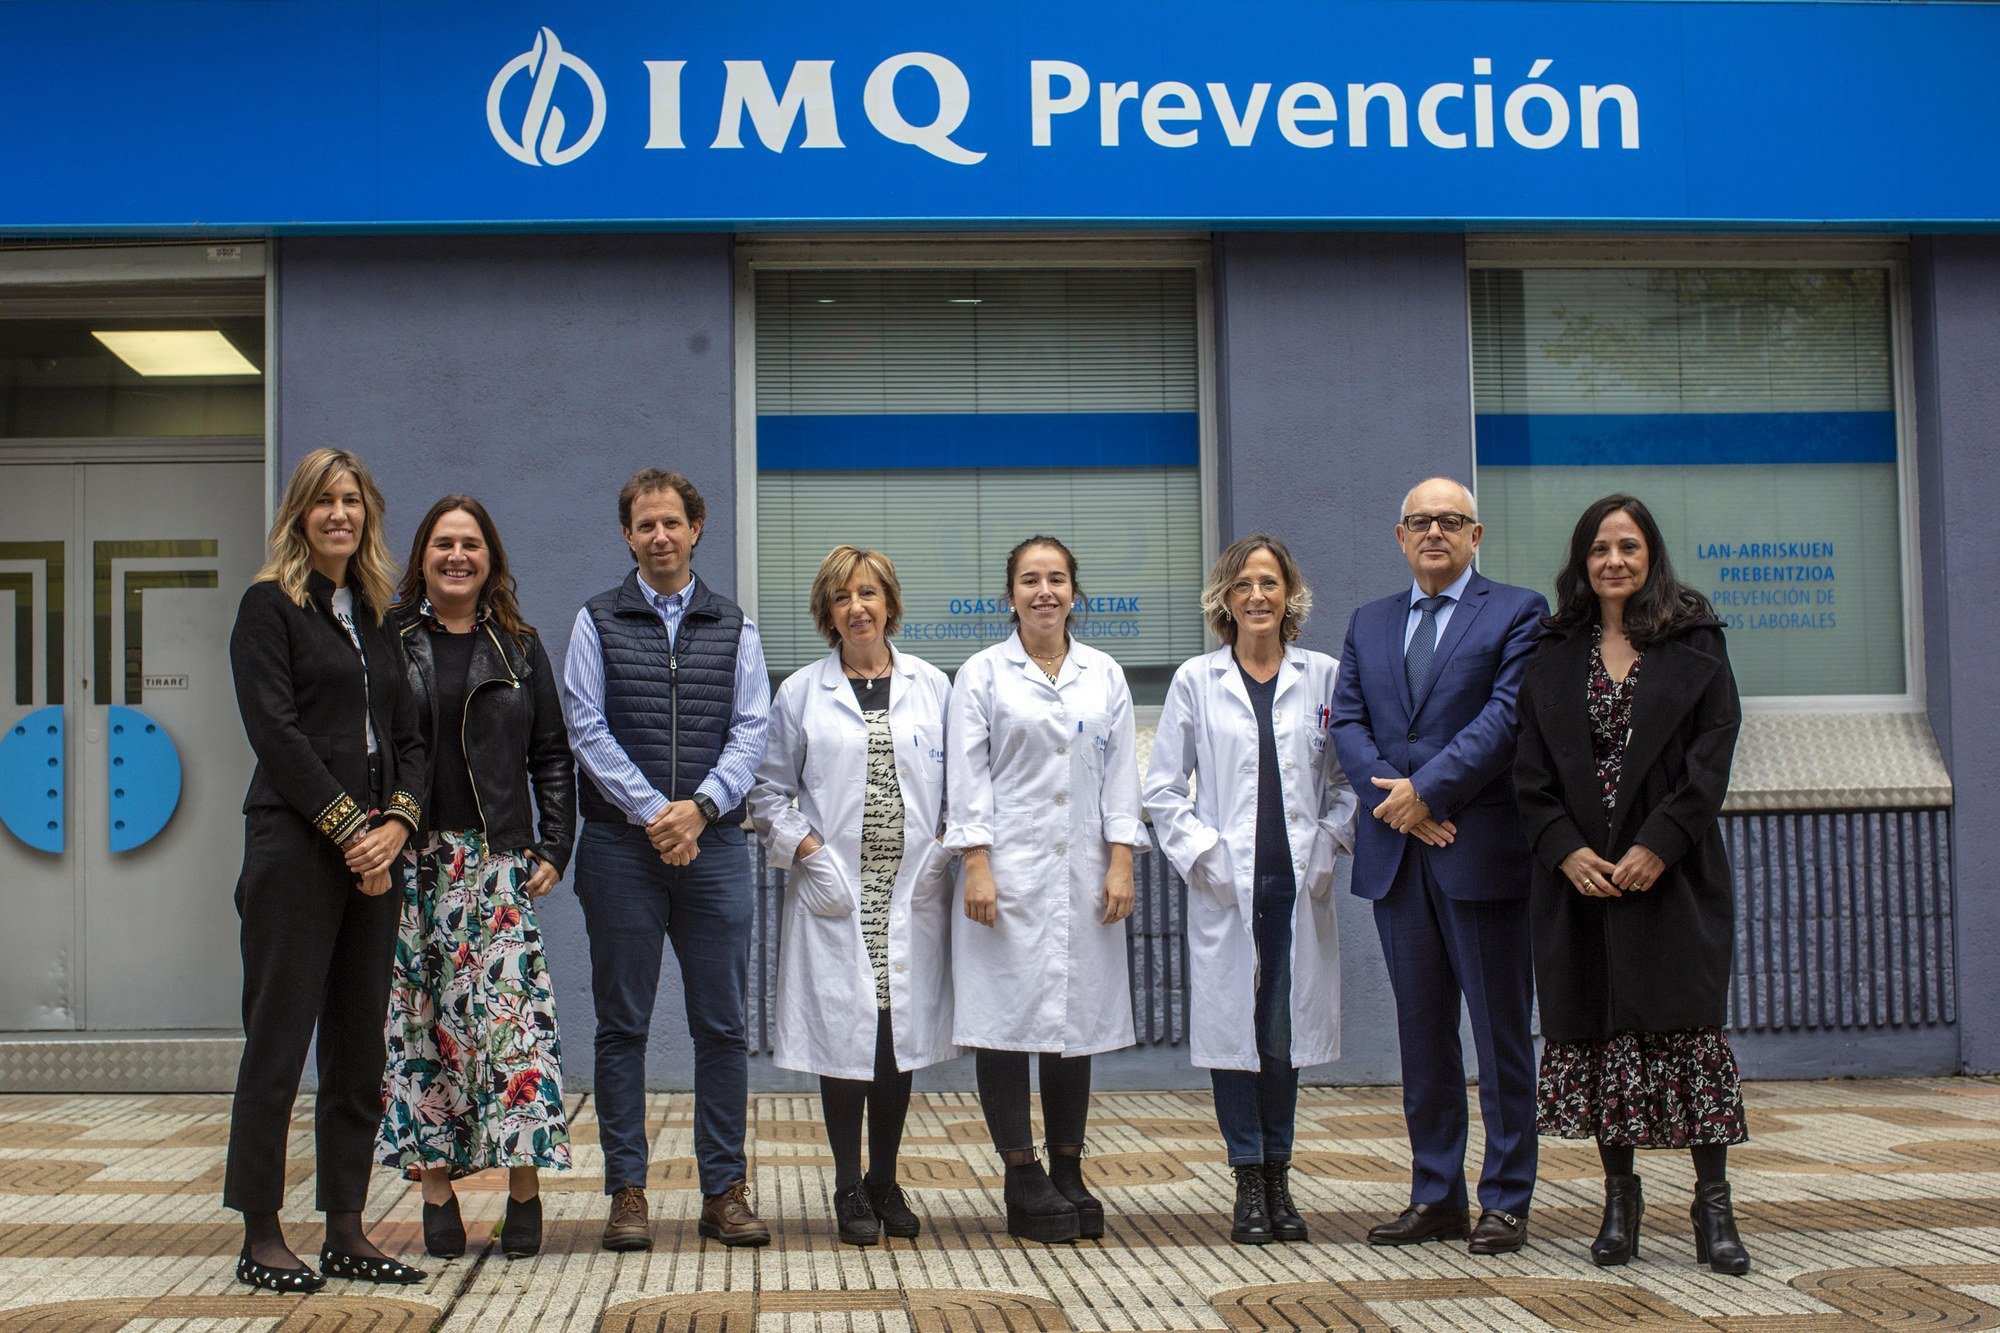 IMQ Prevención celebra su primera jornada en Navarra tras la apertura de su nuevo centro